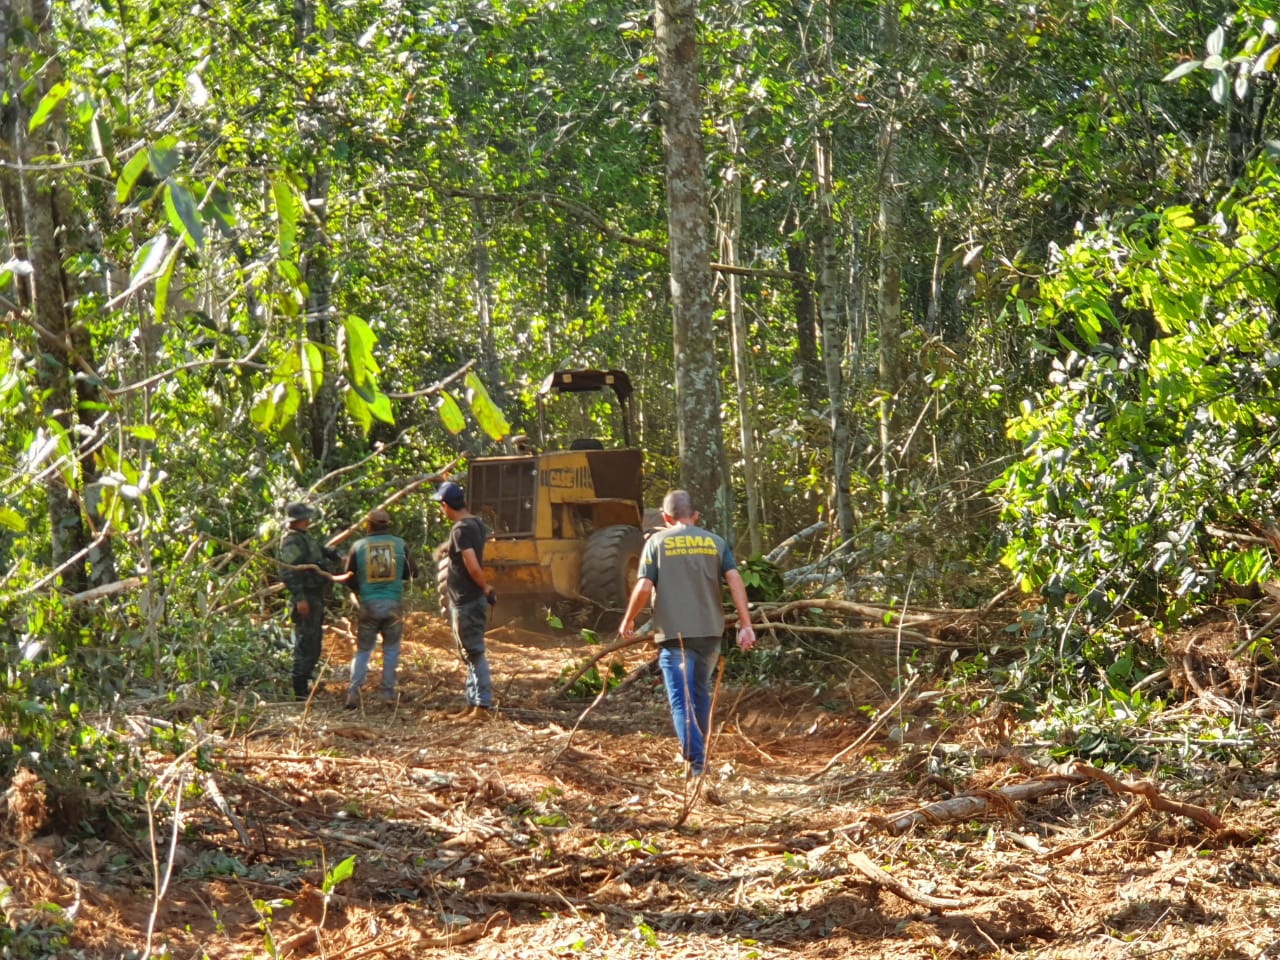 extração de madeira ilegal em Mato Grosso